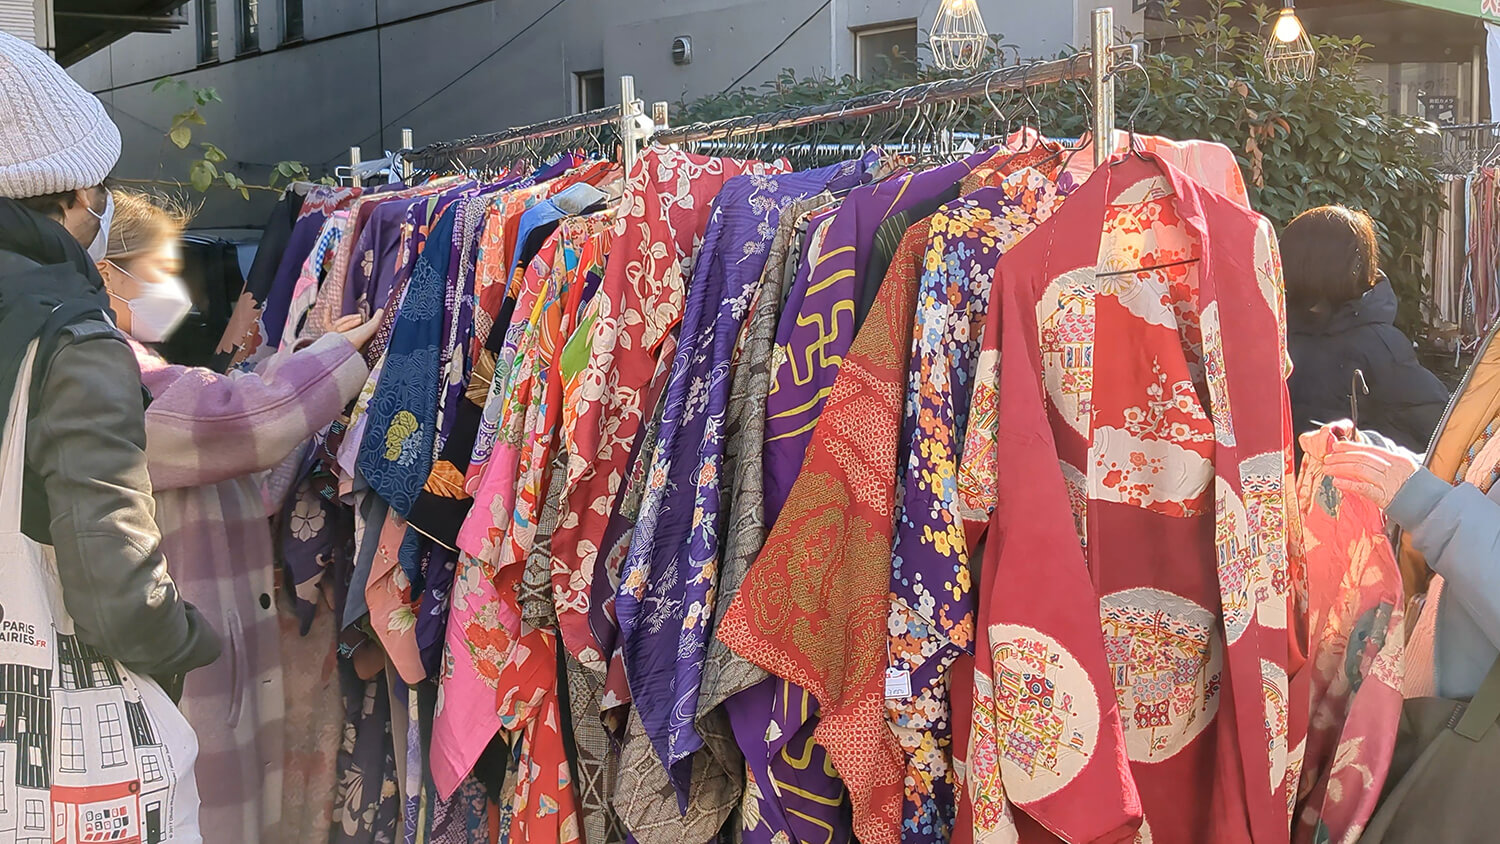 この画像は2022年ボロ市の和服を販売している露店を撮影した写真です